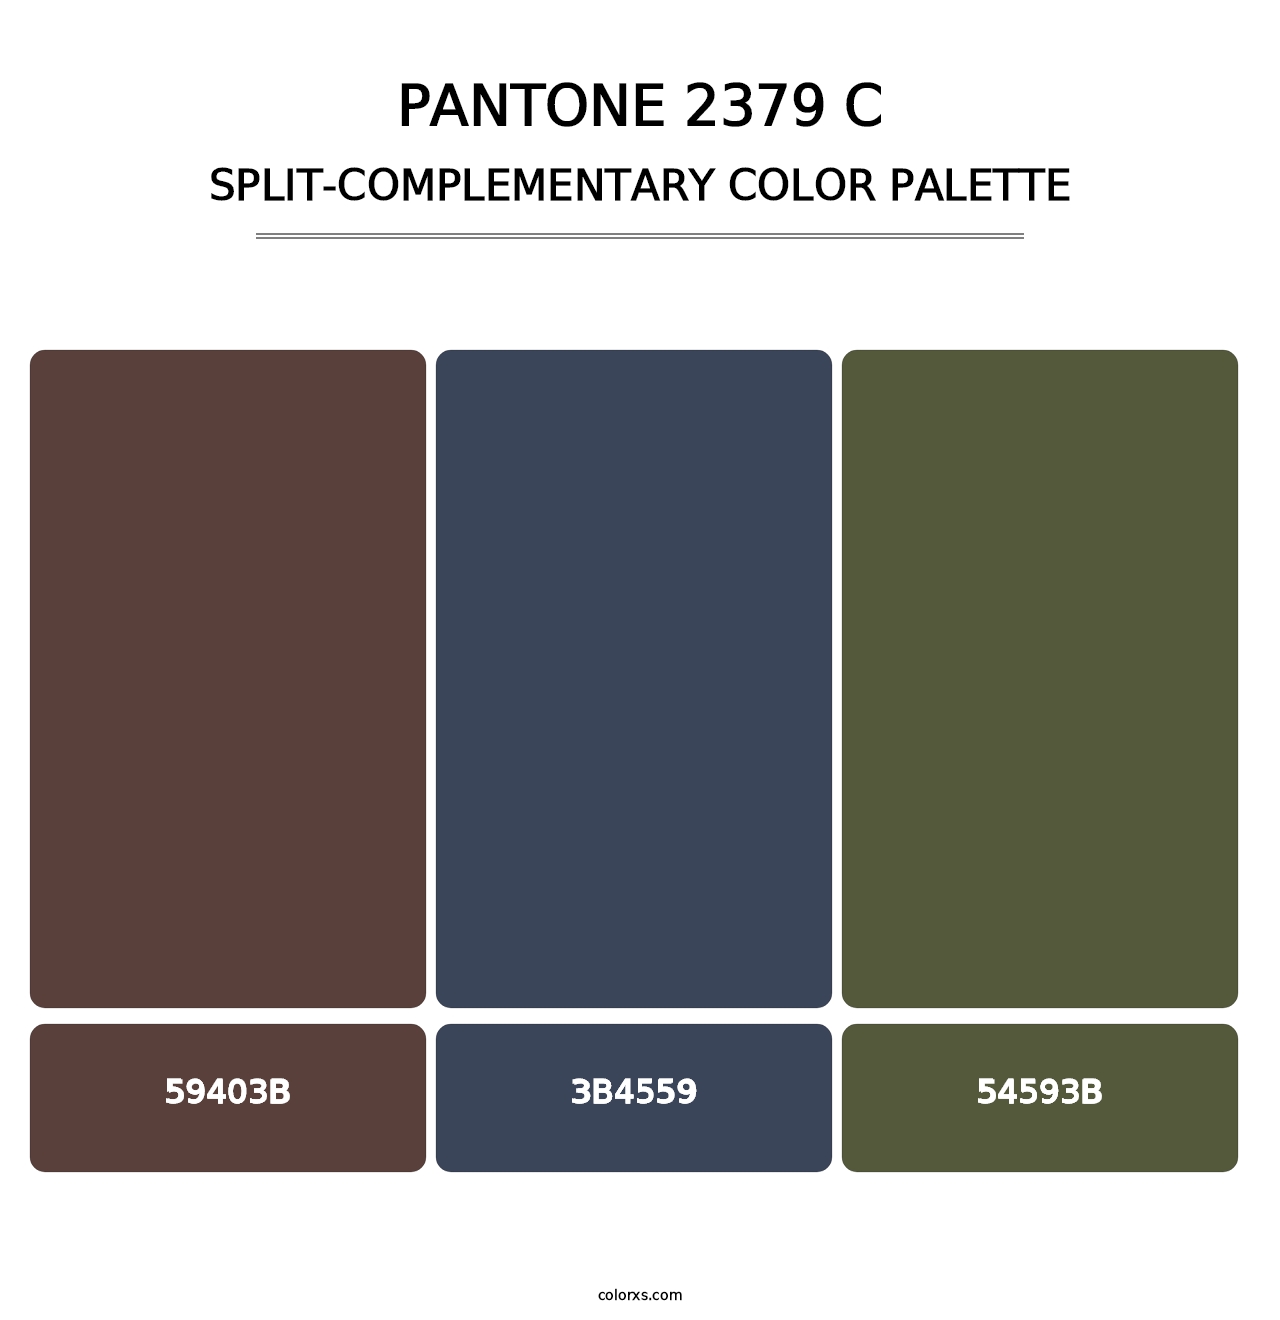 PANTONE 2379 C - Split-Complementary Color Palette